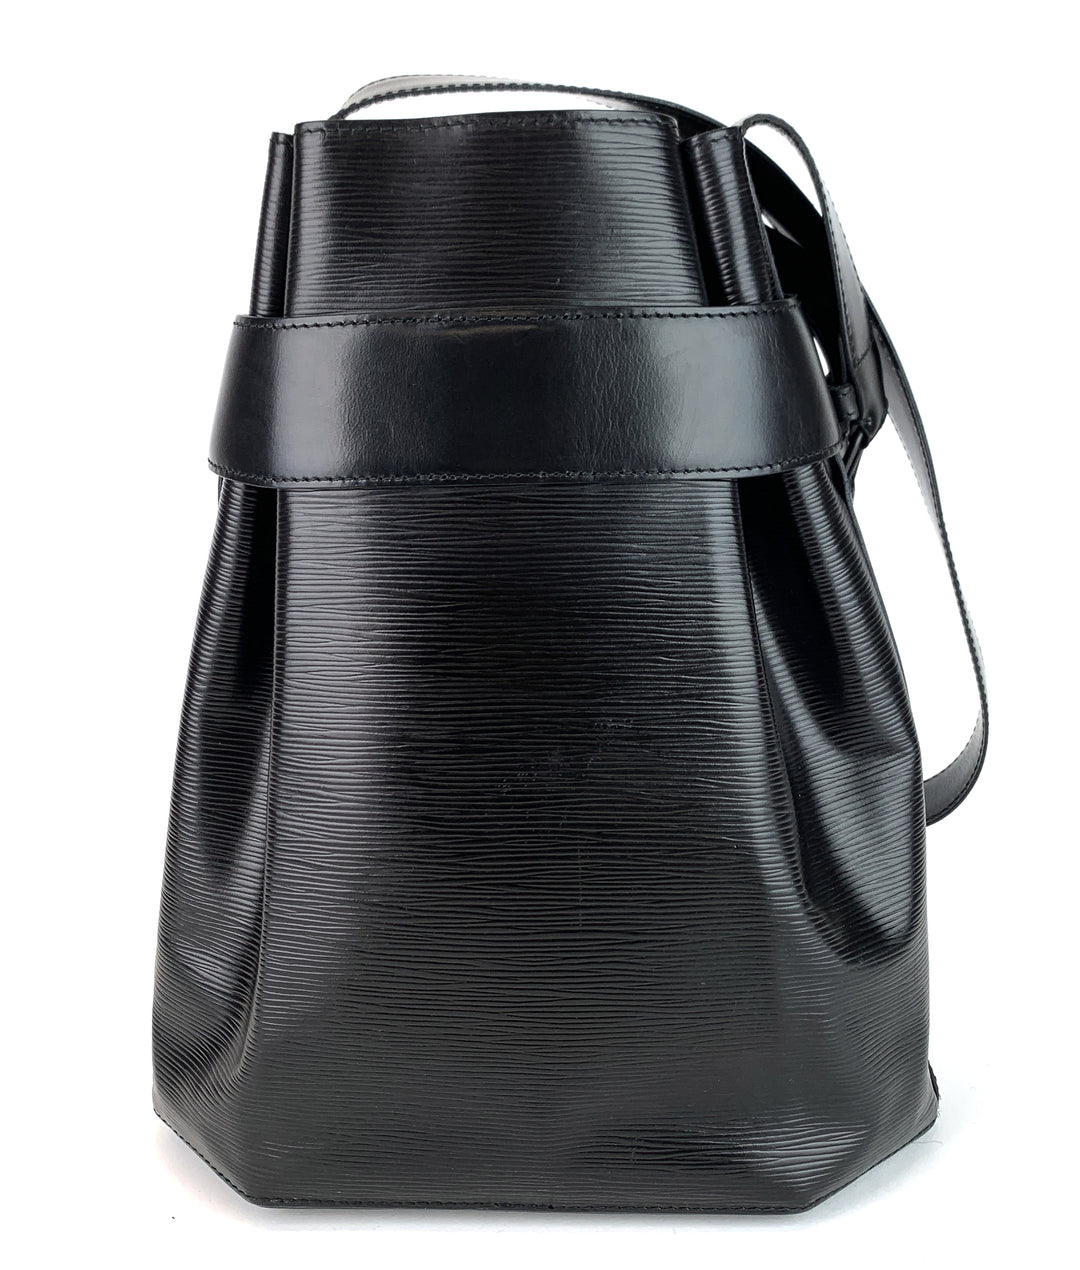 Noir Epi leather Louis Vuitton Sac D'epaule GM with multi tonal